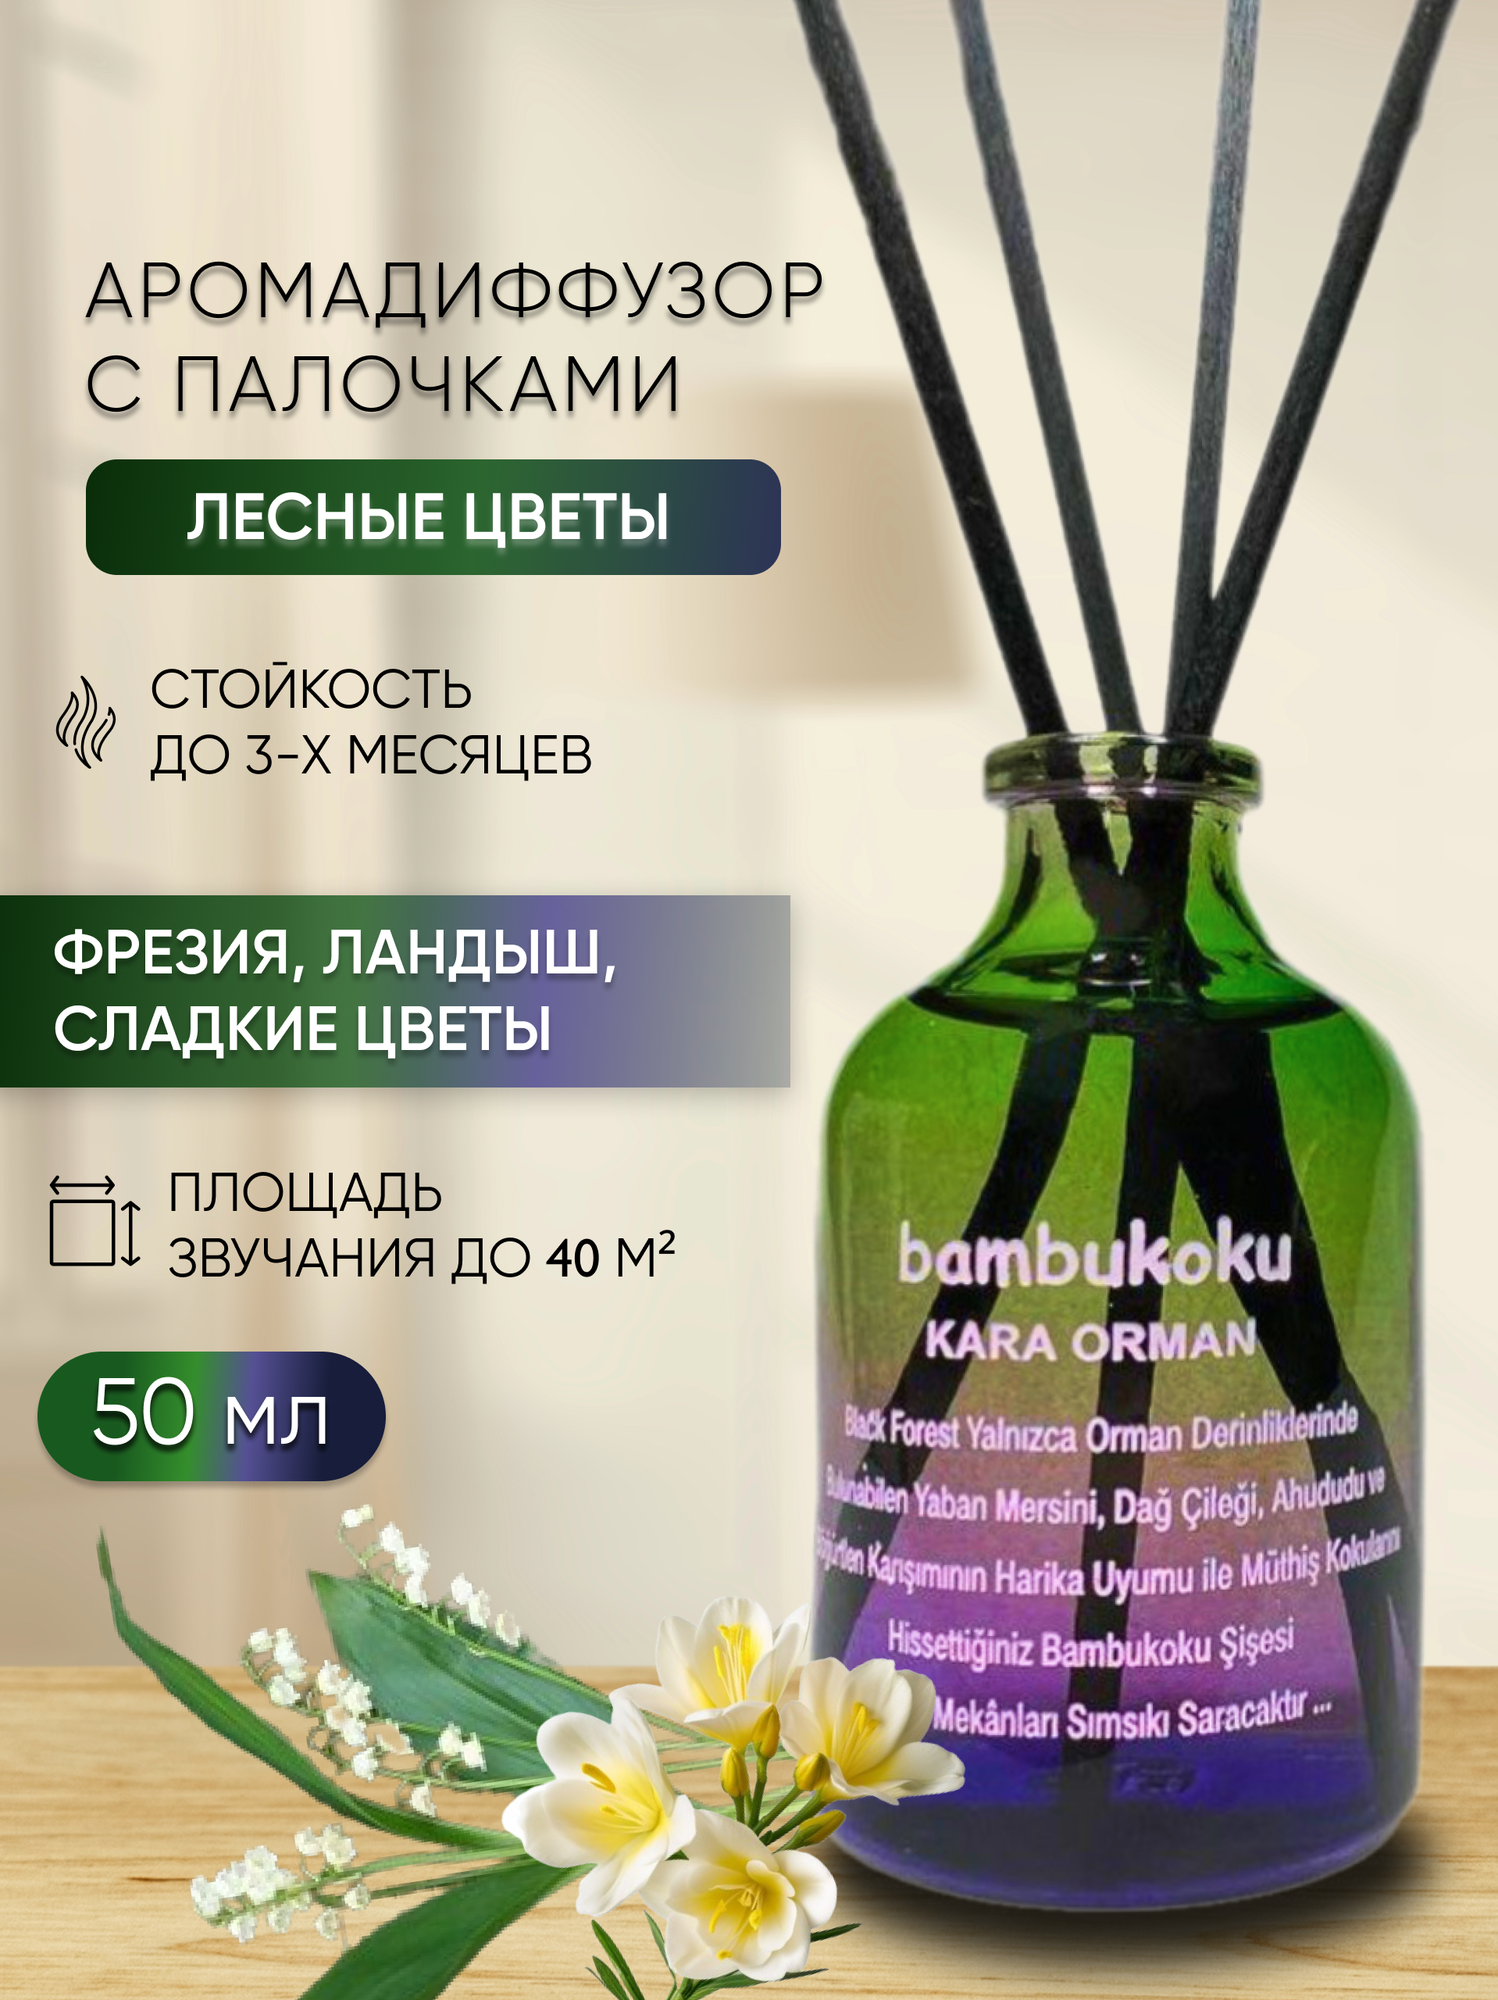 Ароматизатор для дома парфюм, диффузор с палочками, Лесные цветы 50 мл